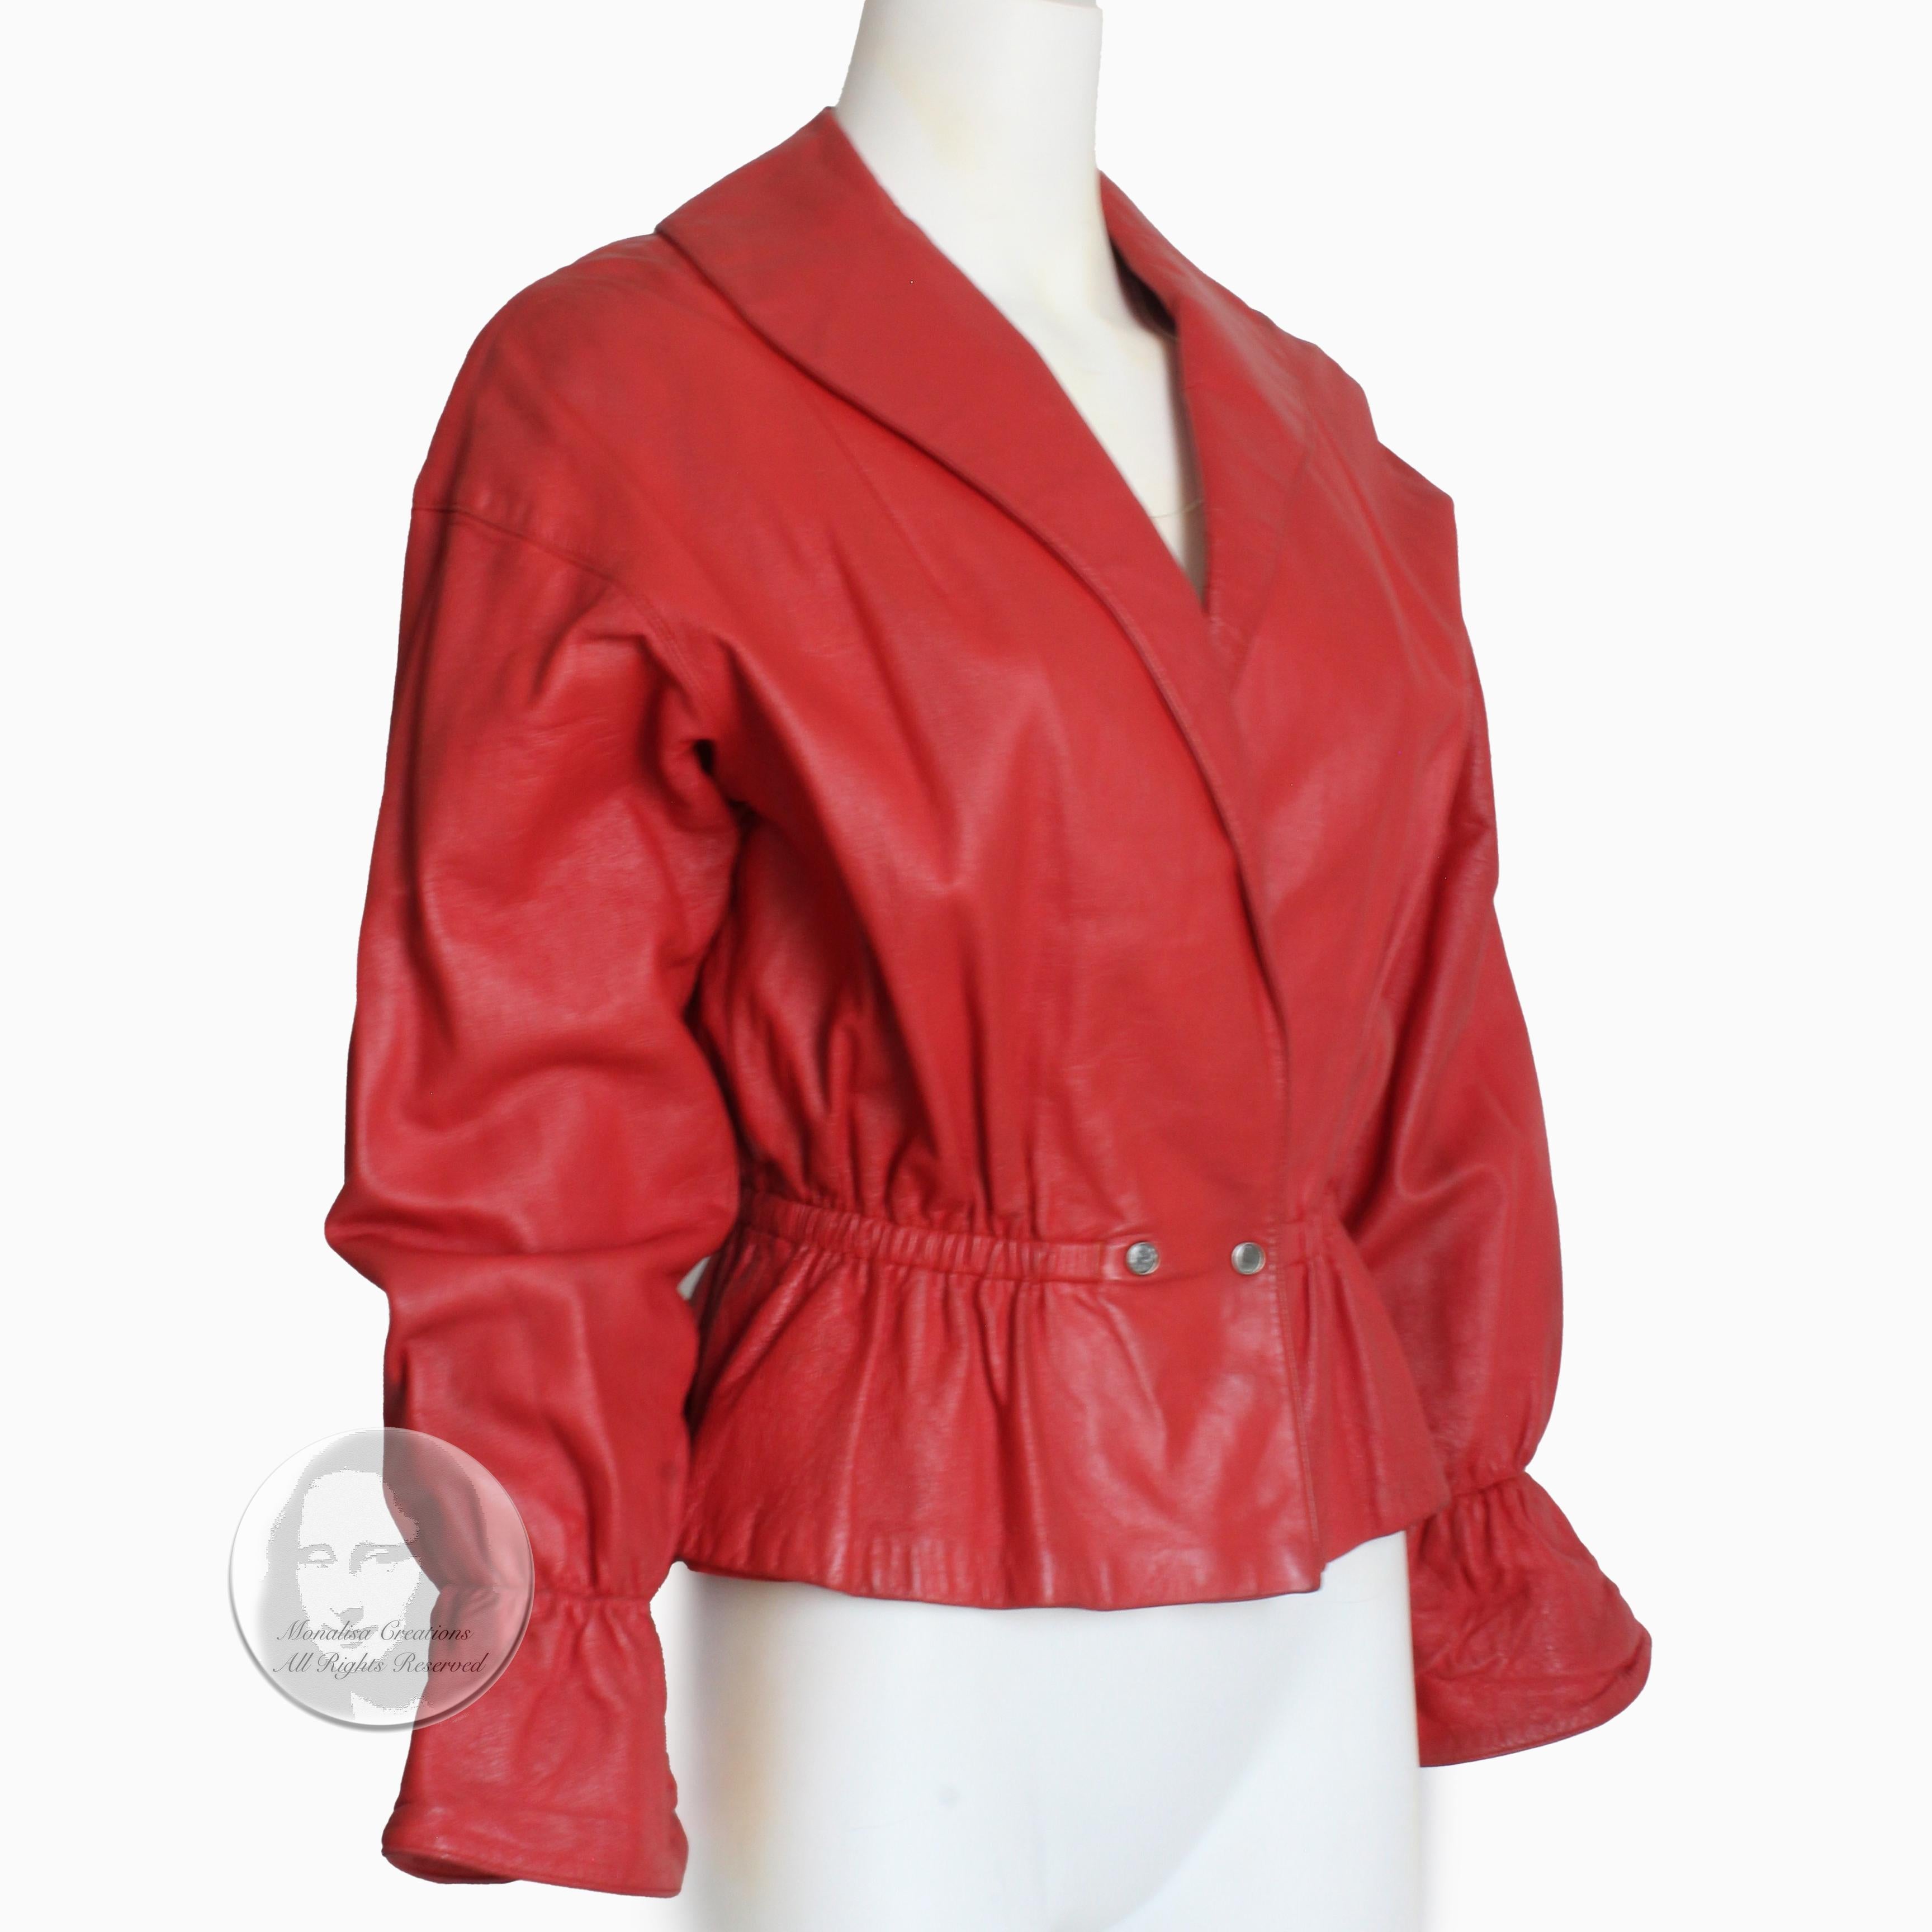  Bonnie Cashin for Sills - Veste en cuir rouge à taille péplum, rare, vintage, années 1960  Unisexe 